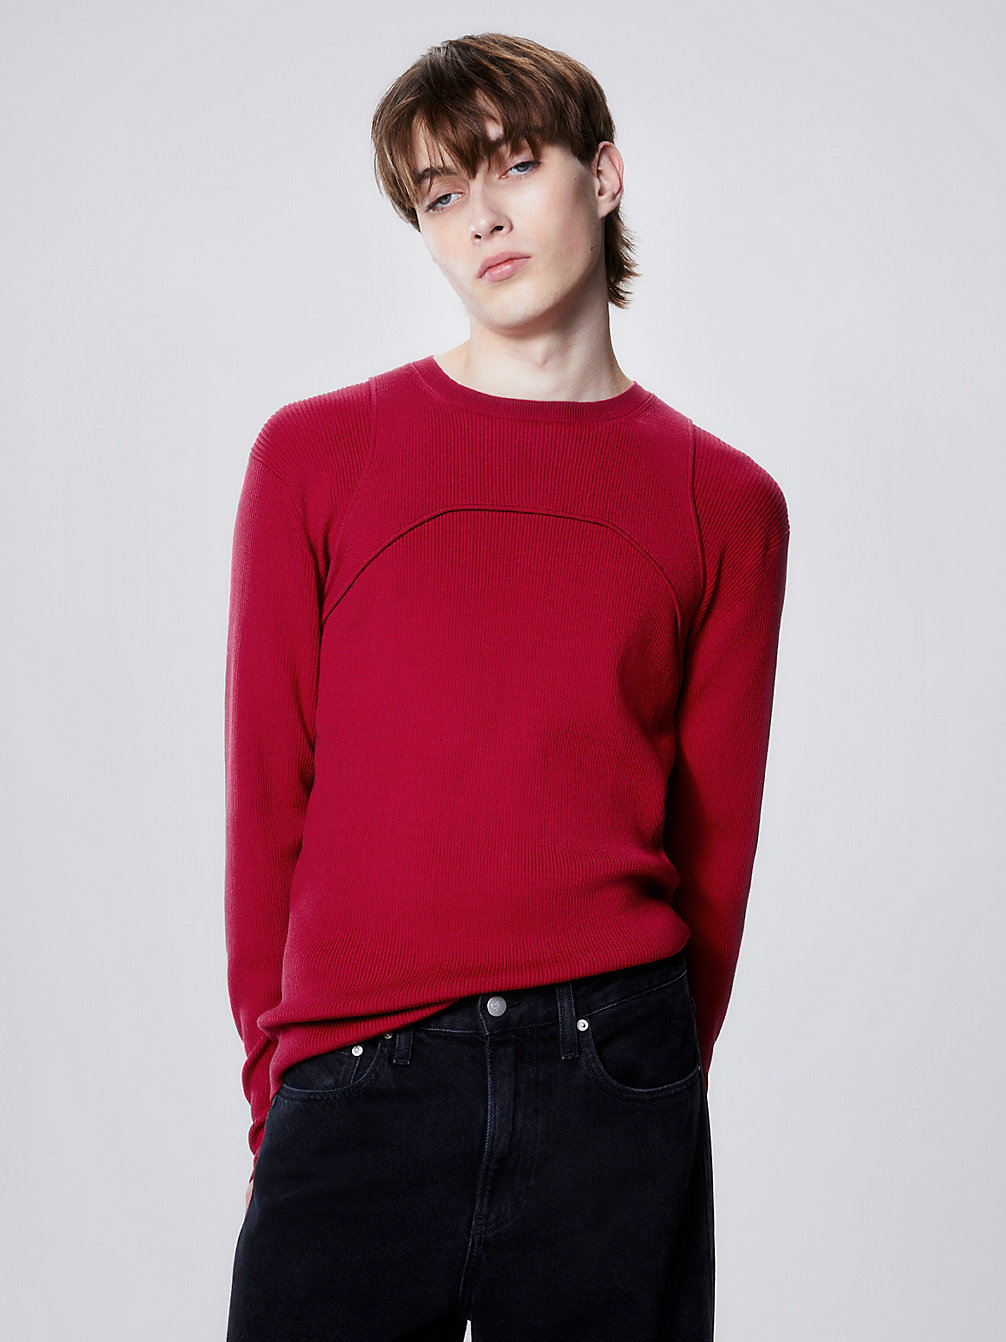 RADIANT RED > Wąski Sweter Z Uprzężą > undefined Mężczyźni - Calvin Klein